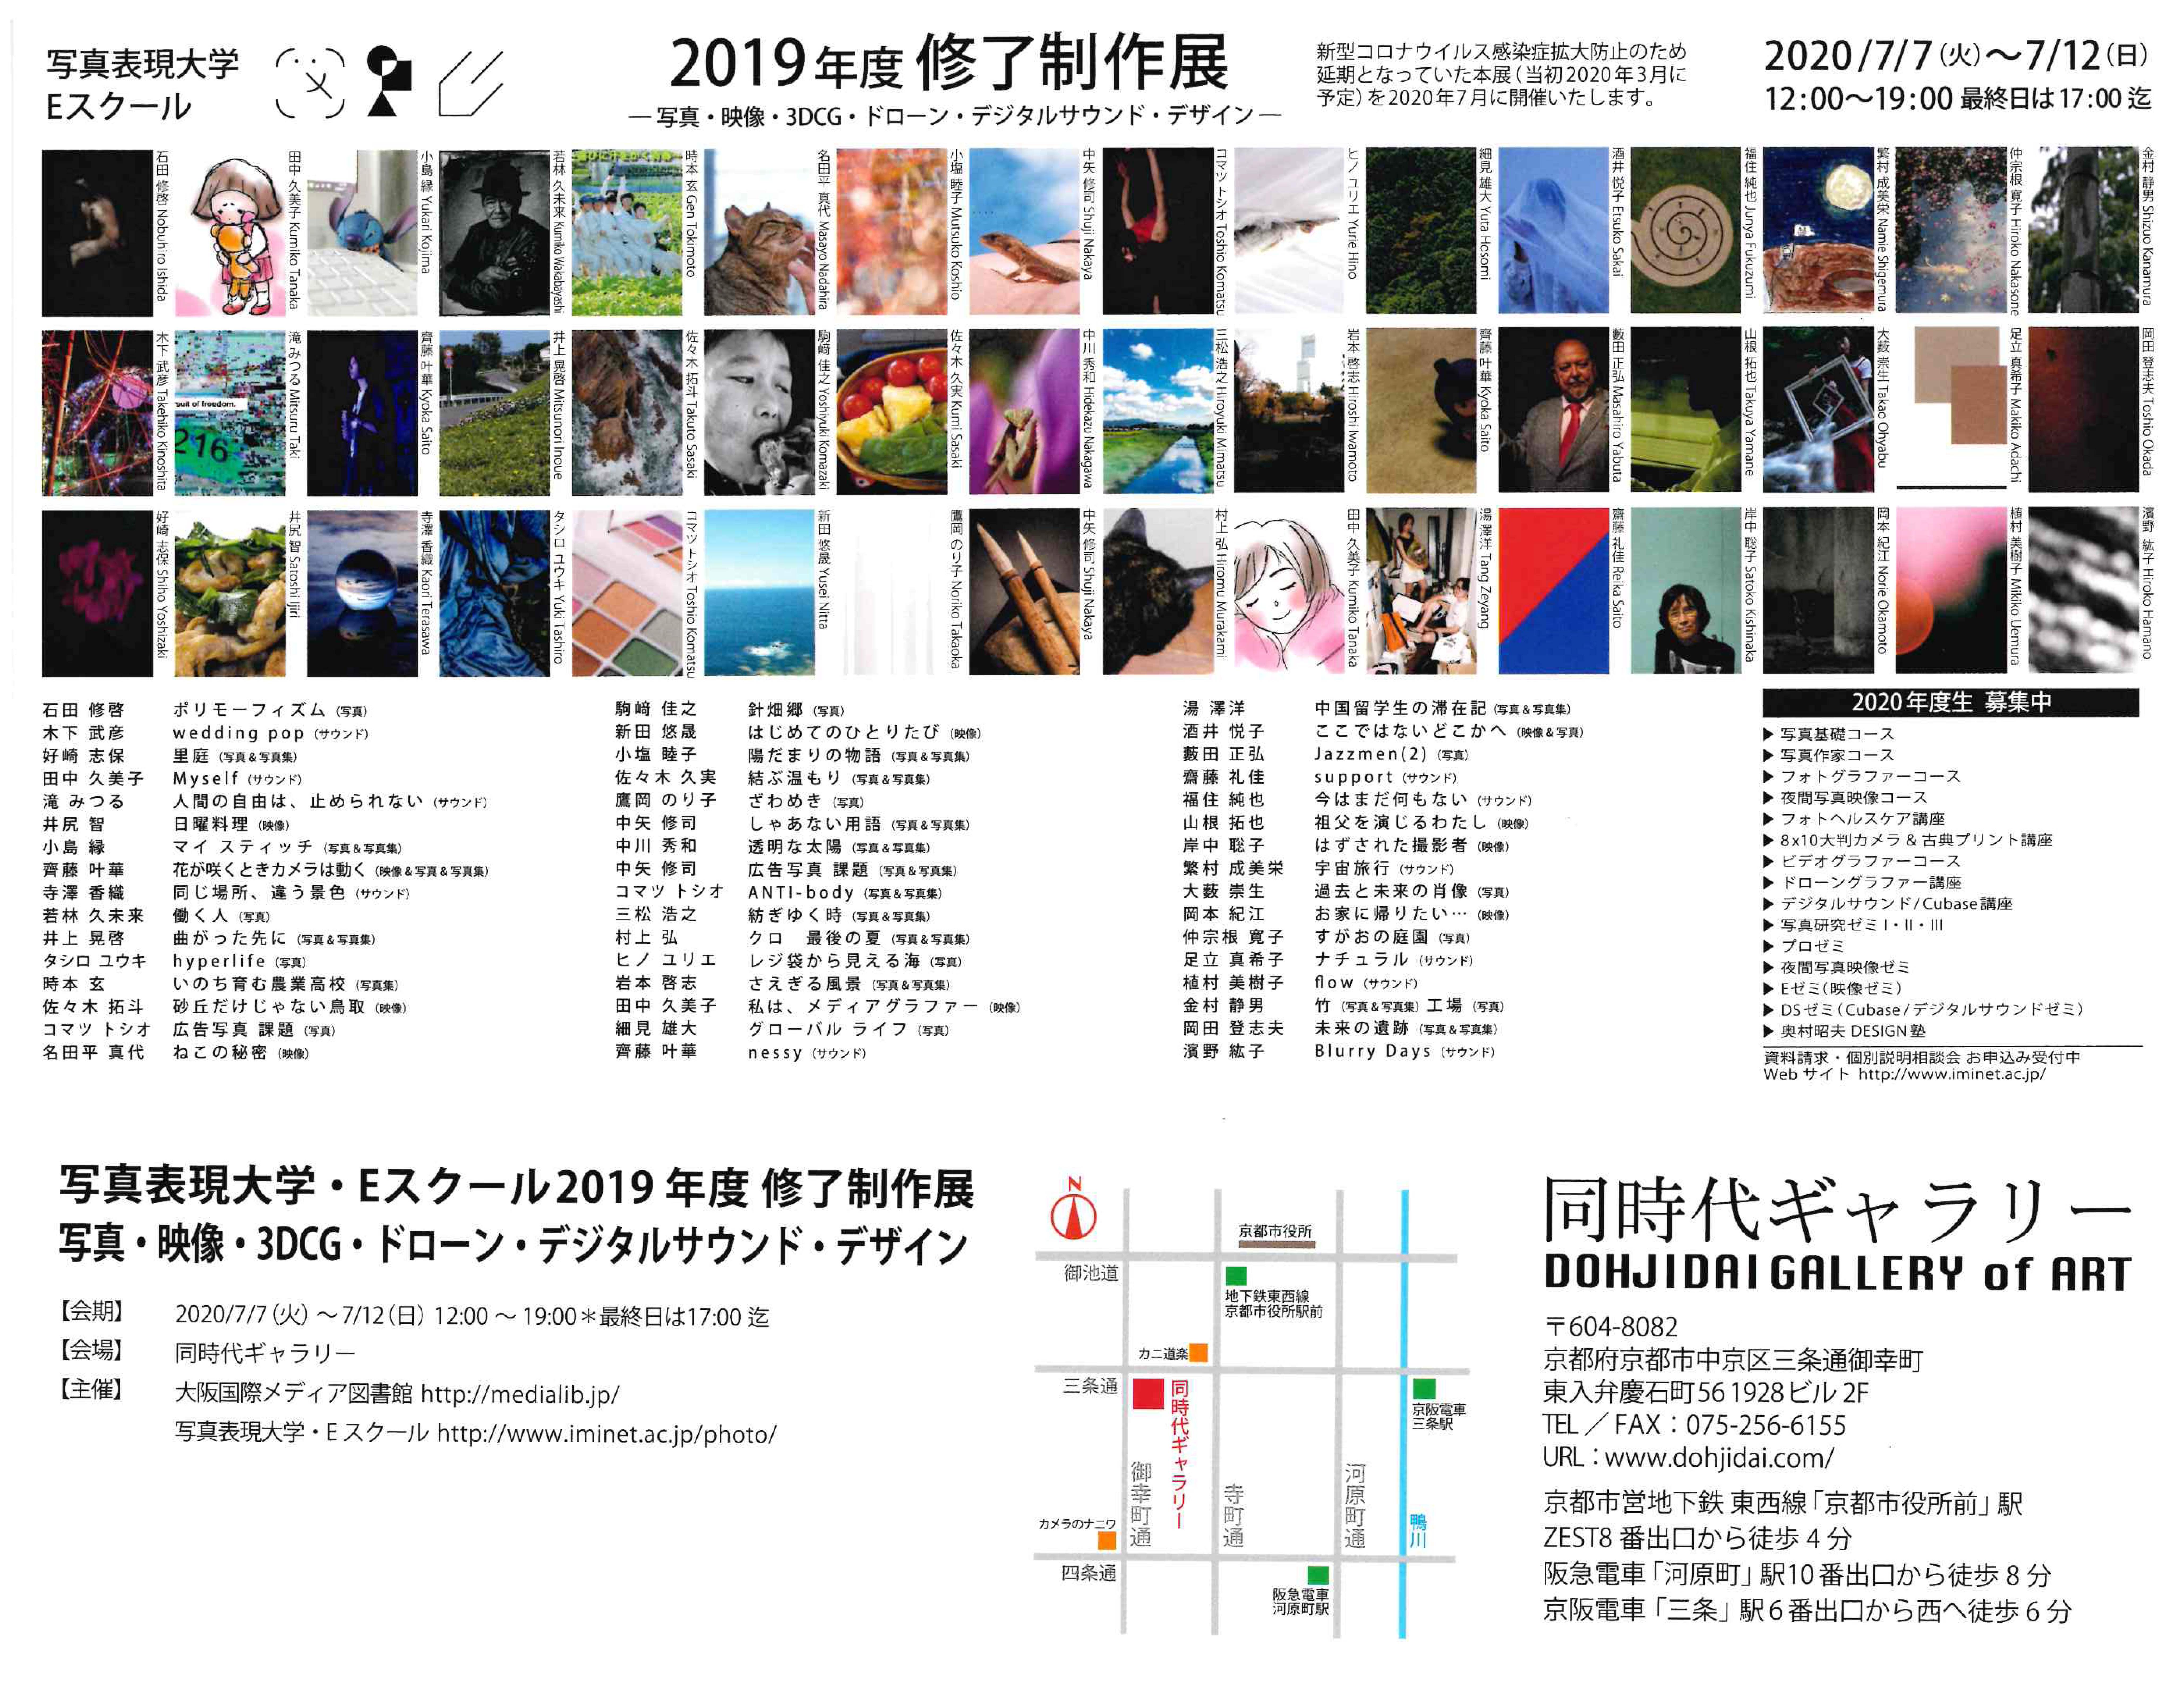 京都の同時代ギャラリーにて、「写真表現大学・Eスクール 2019年度 修了制作展」を開催します。当館が運営する写真表現大学・Eスクールでは、さまざまなバックグラウンドを持つ幅広い年齢層（社会人・シニア・大学生・高校生）の受講生たちが、写真・映像・3DCG・ドローン・デジタルサウンド・デザインを当校の独自カリキュラム（芸術系大学・大学院レベル）で学んでいます。会場では、芸術系大学4年分の内容を1年で集中して学んだ1年目の受講生たちの作品と、芸術系大学院レベルの内容で2年目以降も継続して学んでいるゼミ生たちの作品を展示します。それぞれの受講生が一人の表現者として、2019年度の学びの成果を［作品］［ポートフォリオ］［写真集］というかたちで発表し、会期中の在廊はもちろんのこと販売も行います。ぜひご来場ください。